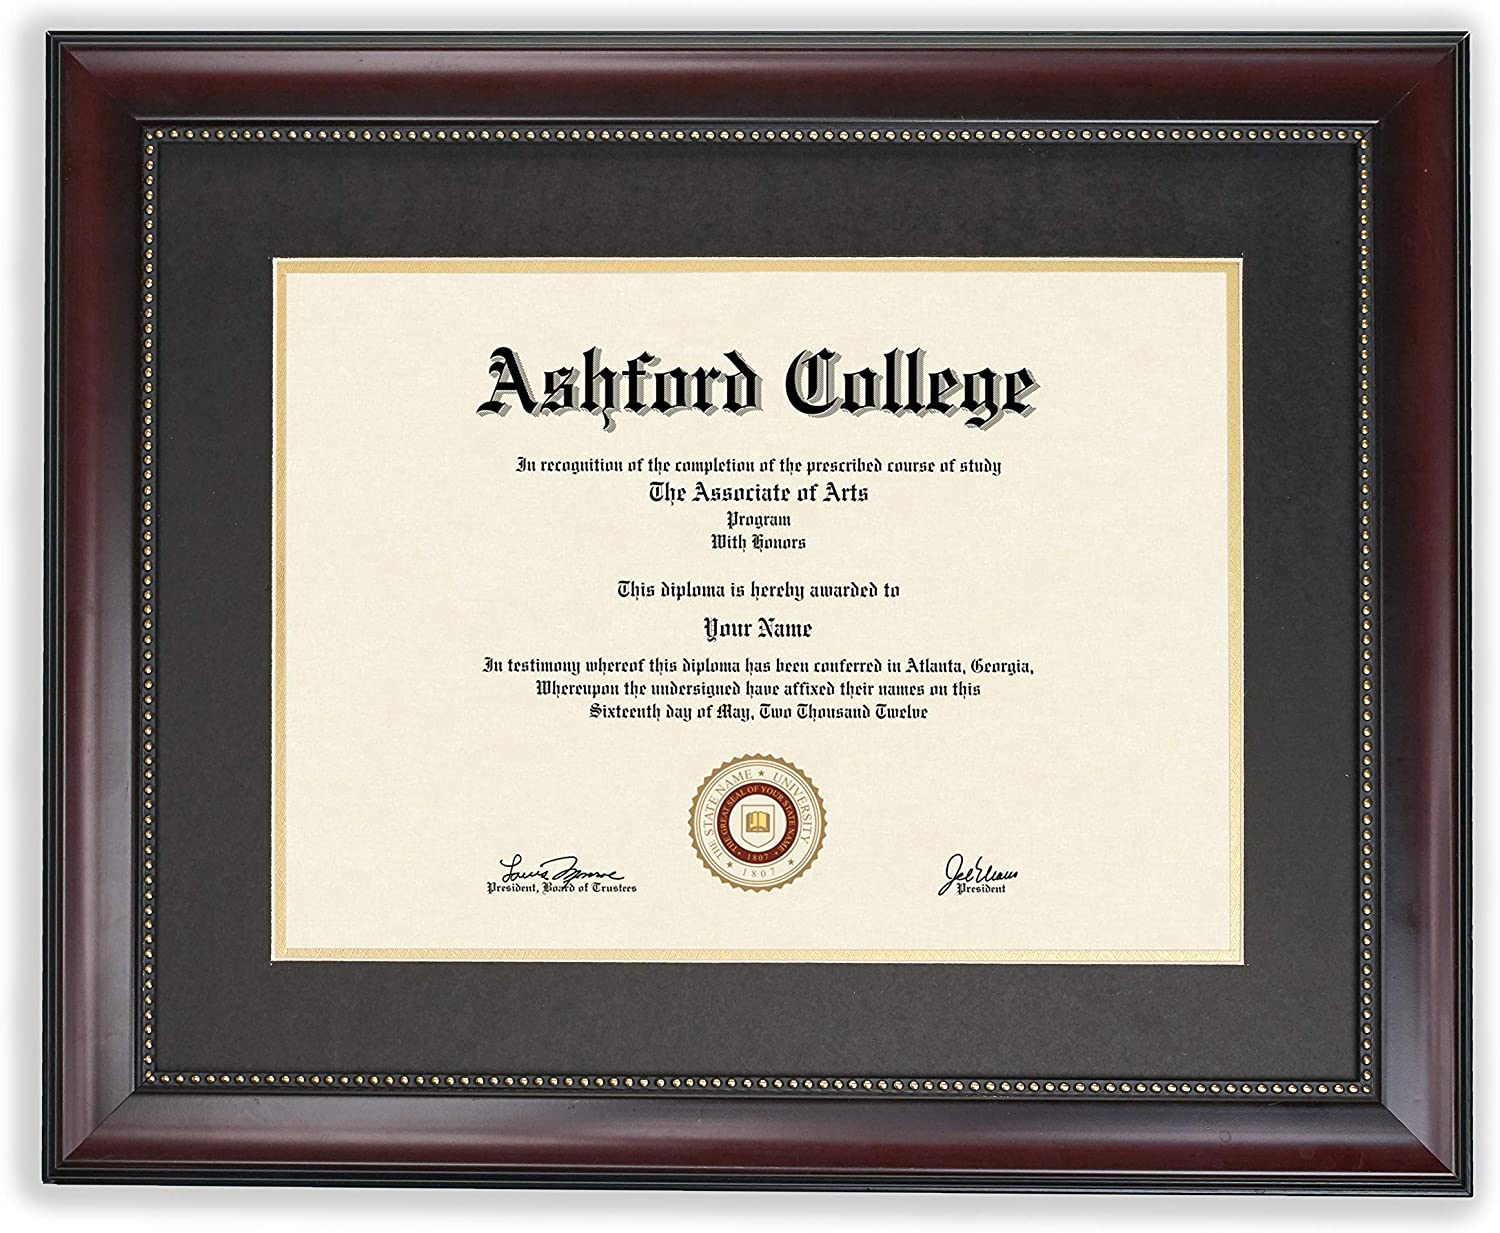 GreyBL Mahogany Wooden Matted Diploma Frame